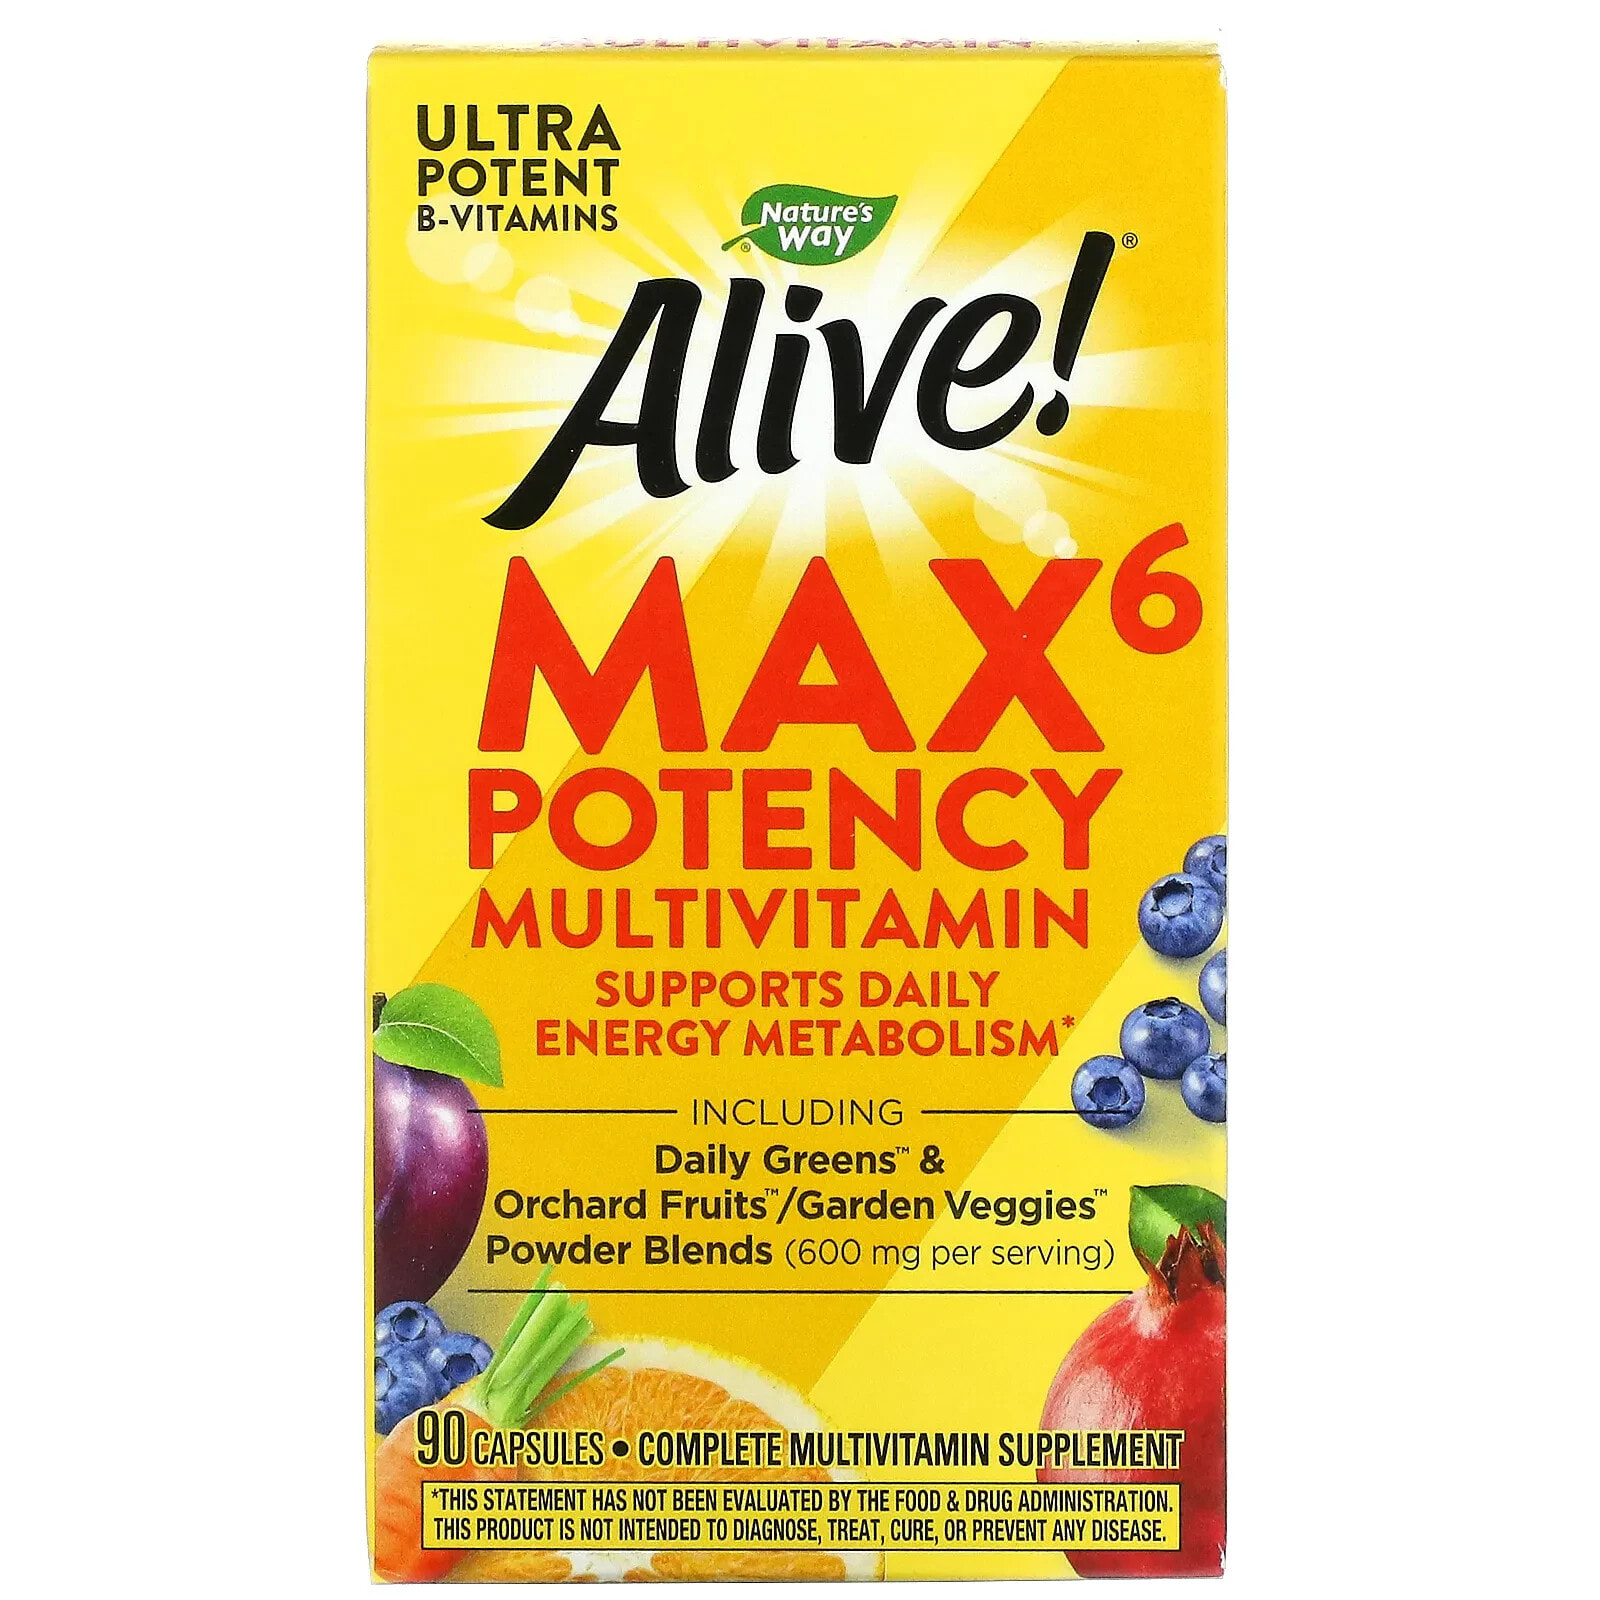 Natures Way Alive! Max 6 Potency Multivitamin Мультивитаминный комплекс для улучшения метаболизма, энергии и бодрости 90 веганских капсул